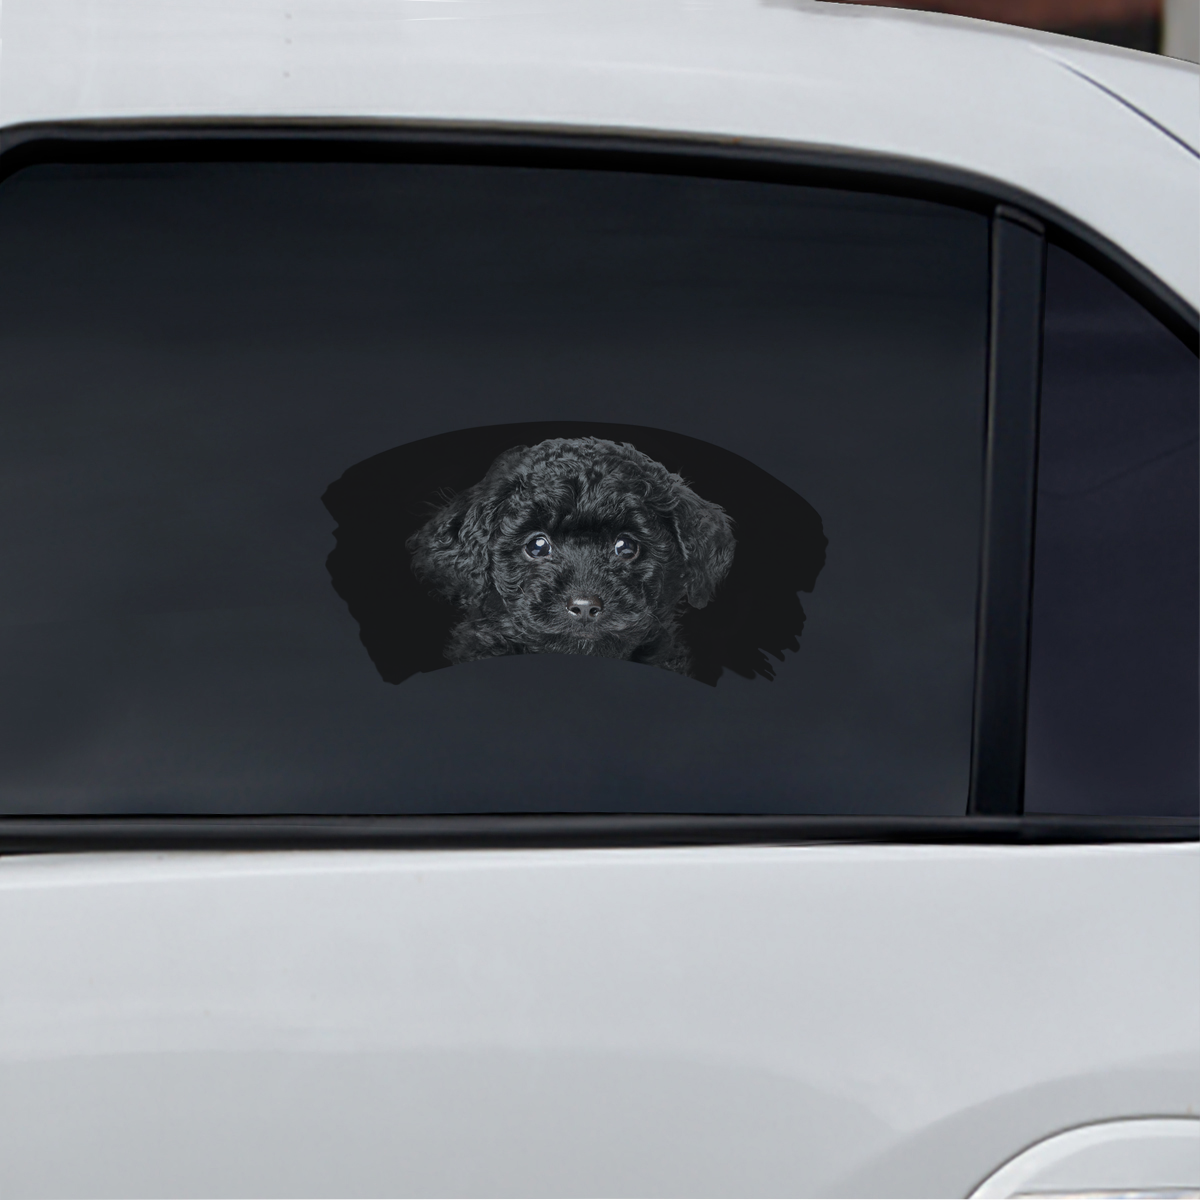 Misty Morning - Poodle Window Car Decal V4